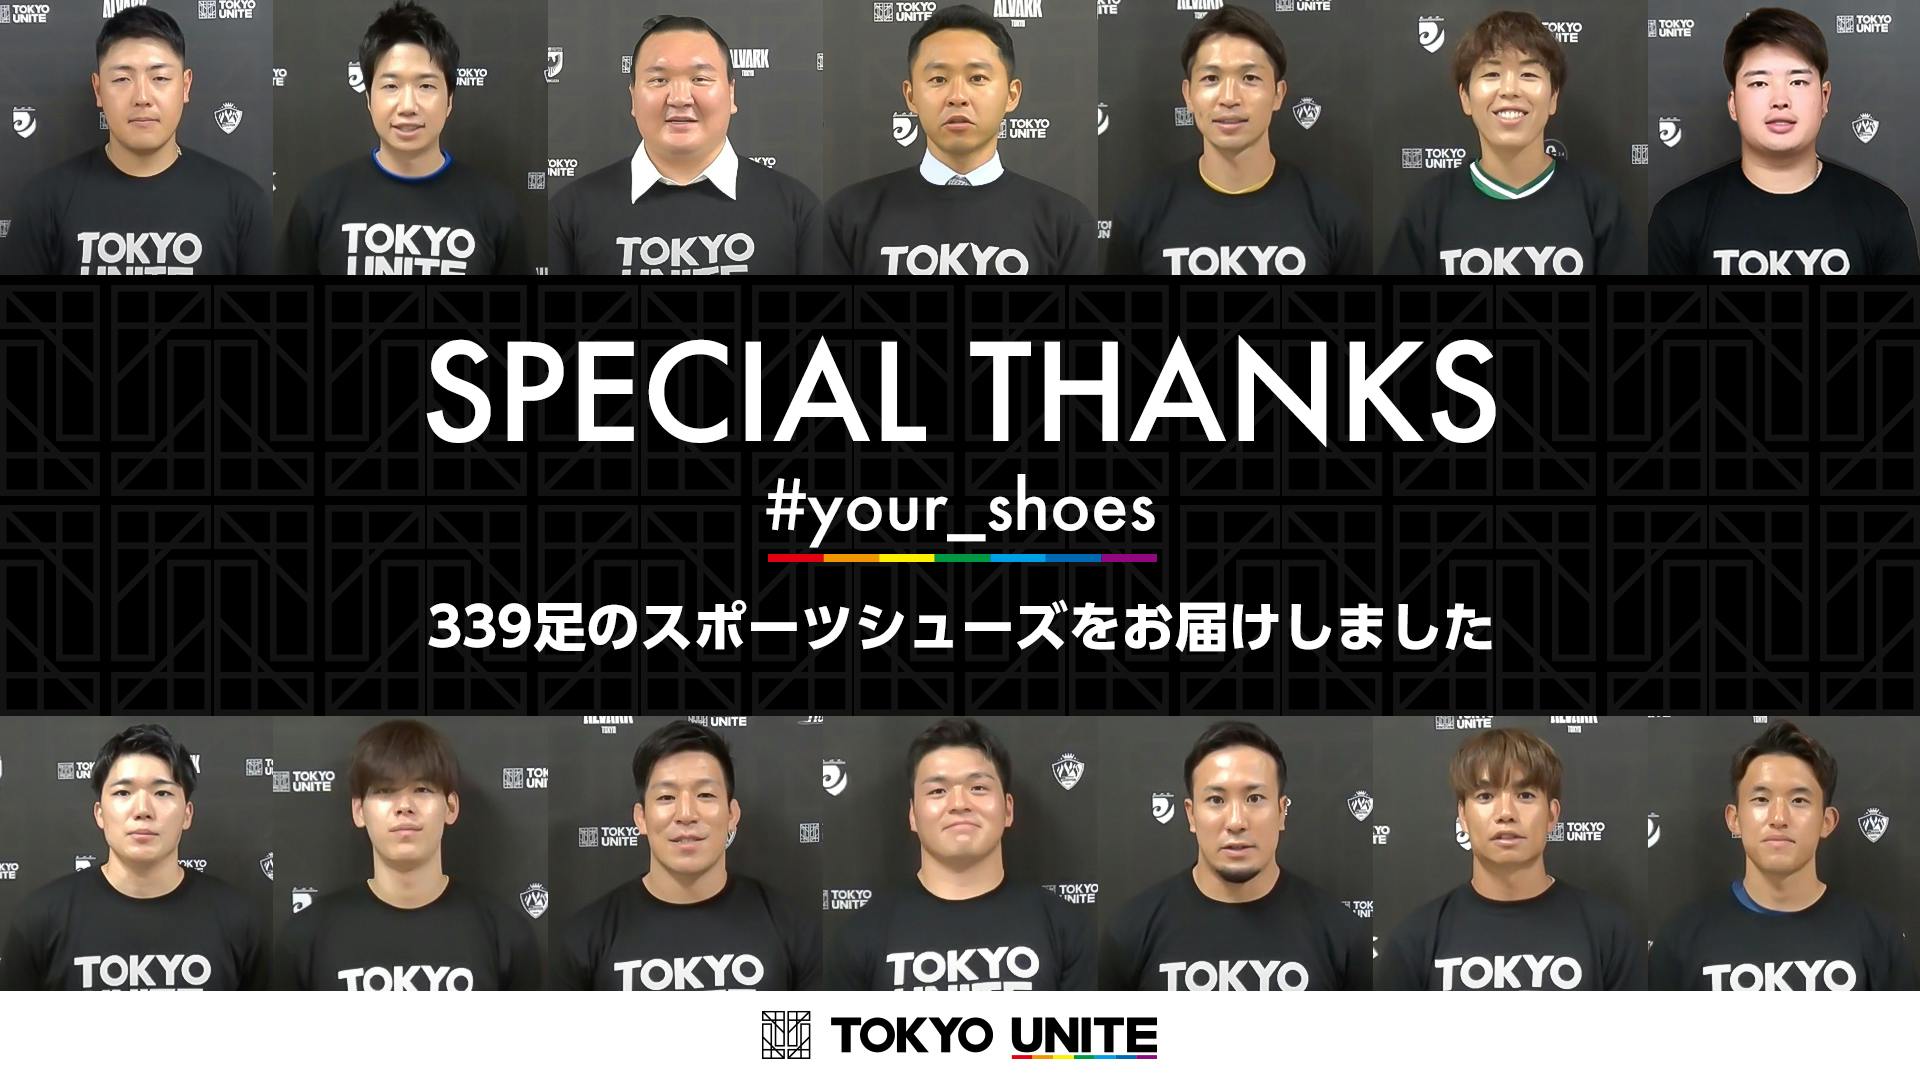 スポーツシューズを届ける「#your_shoes」プロジェクト<br>東京都内で暮らす困窮家庭の子どもたちに339足のシューズをお届け